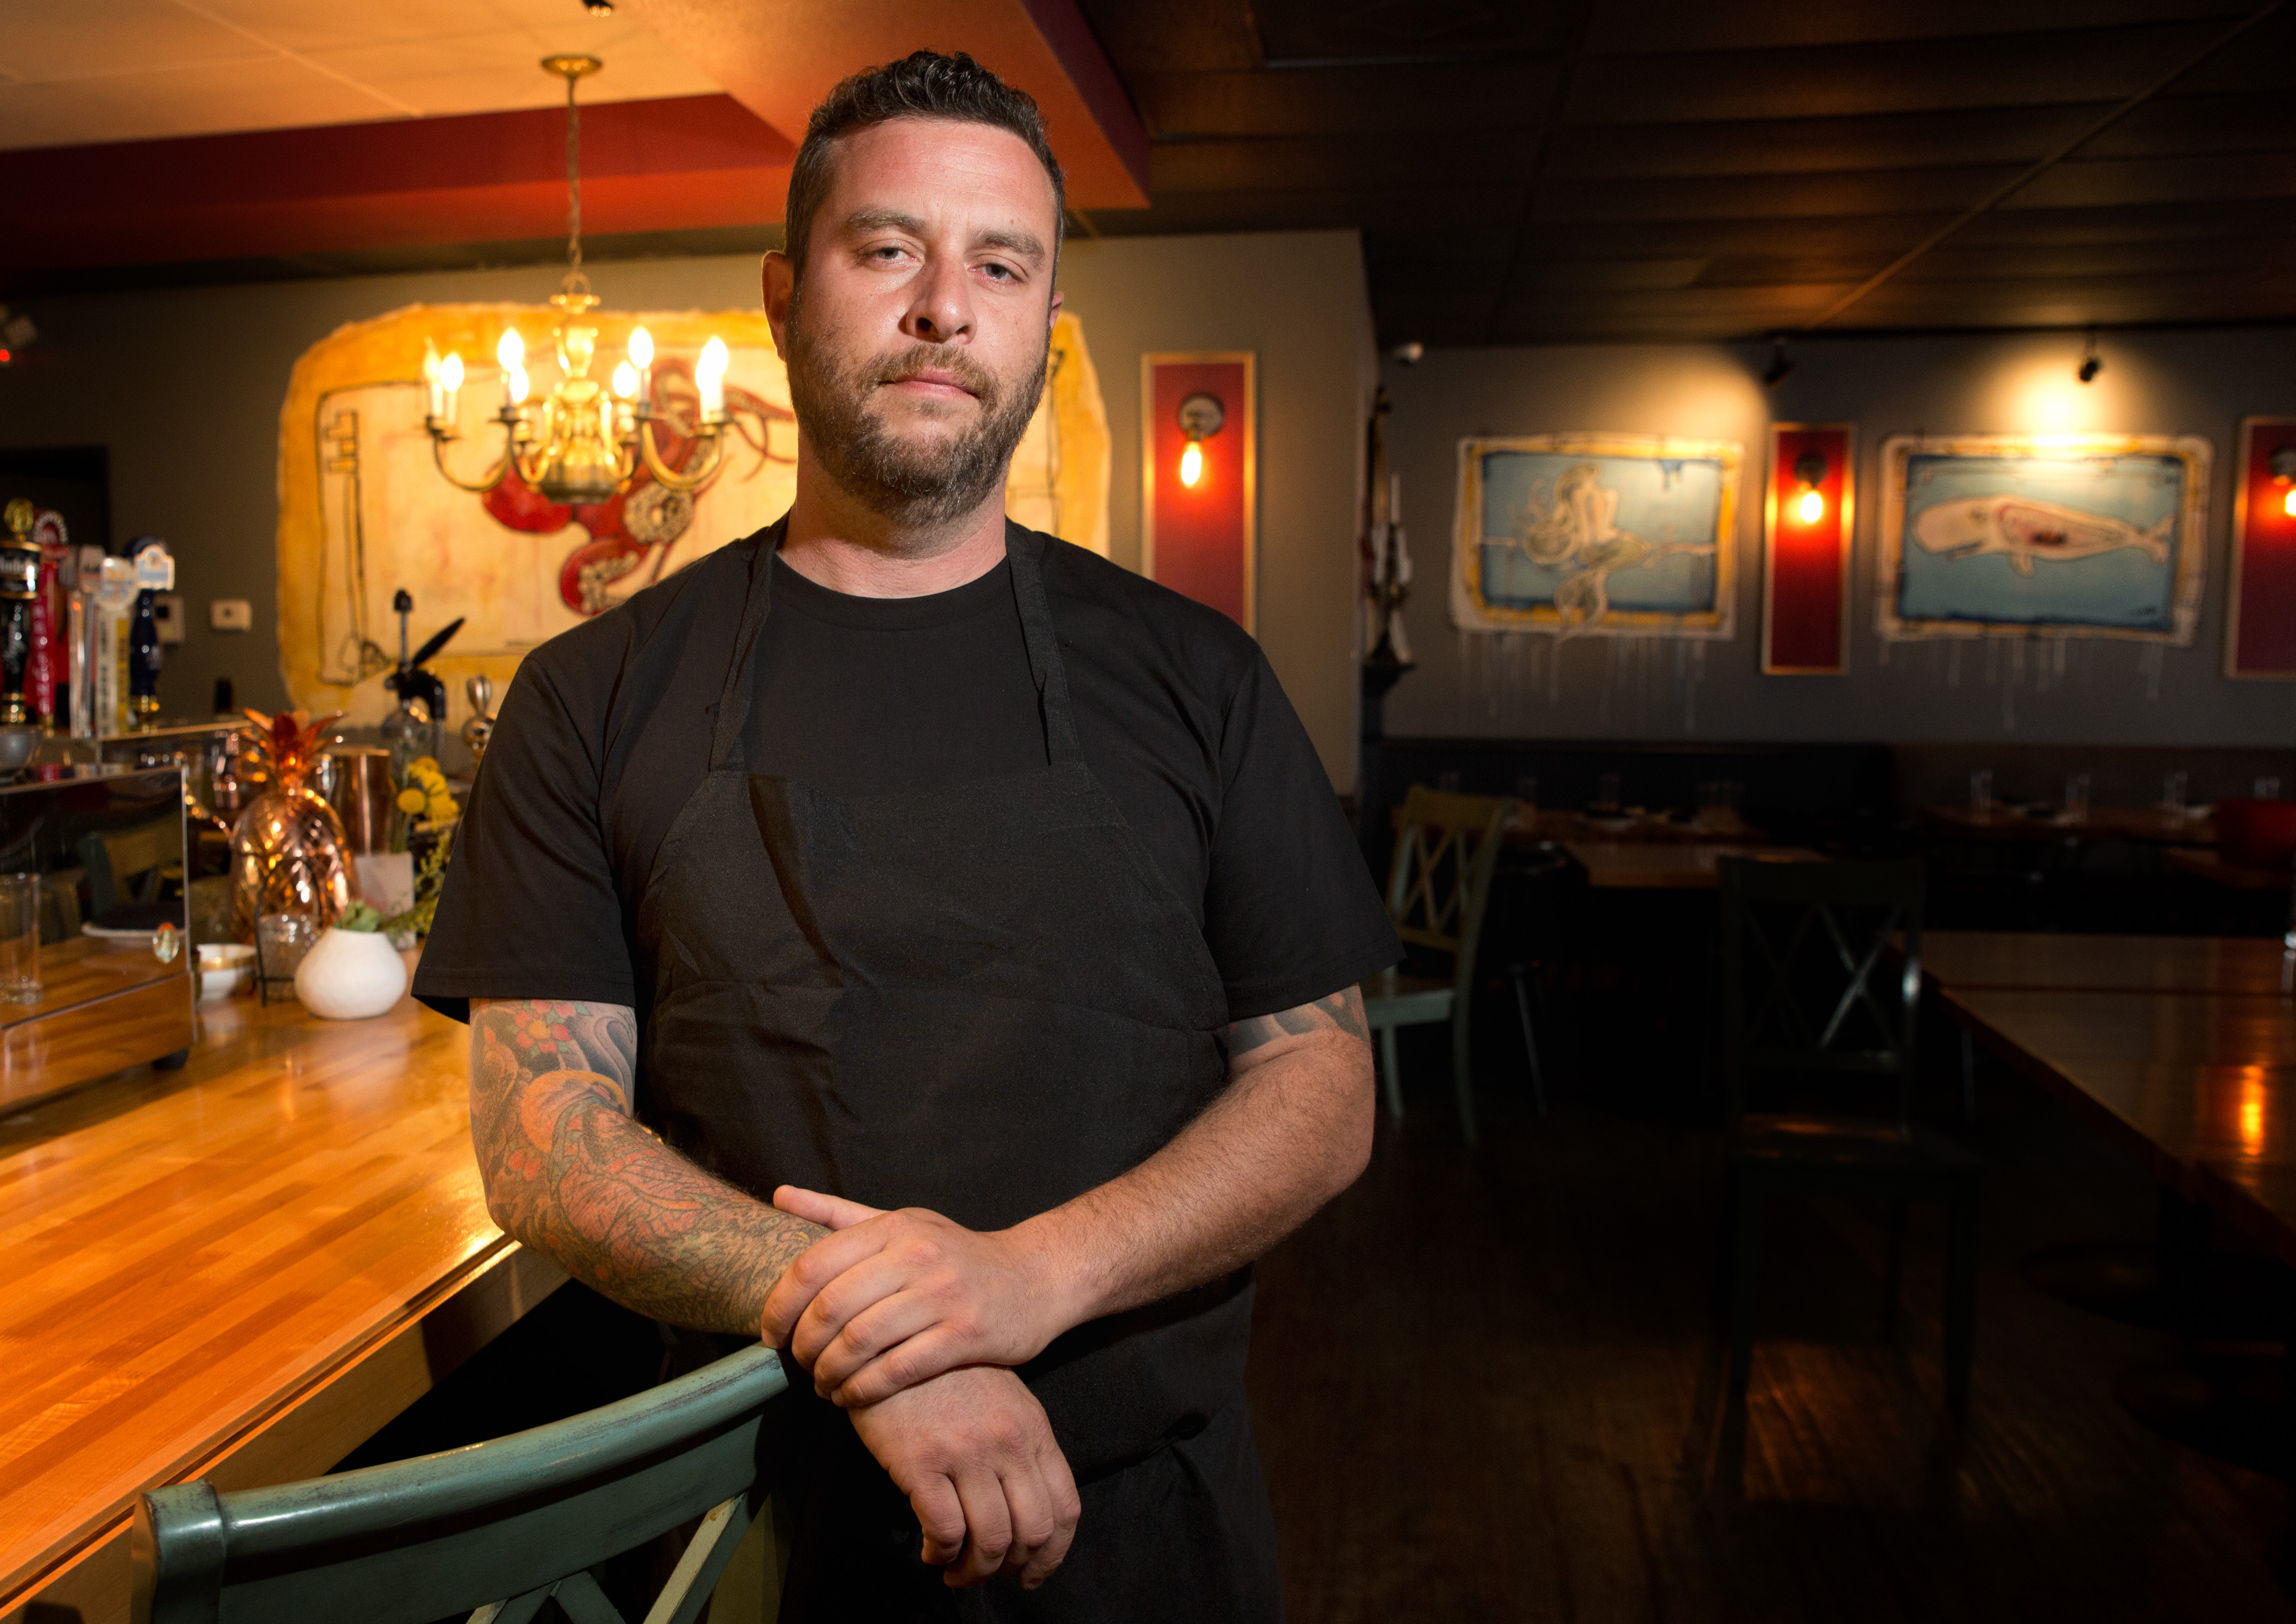 A man in a black T-shirt leans against a bar